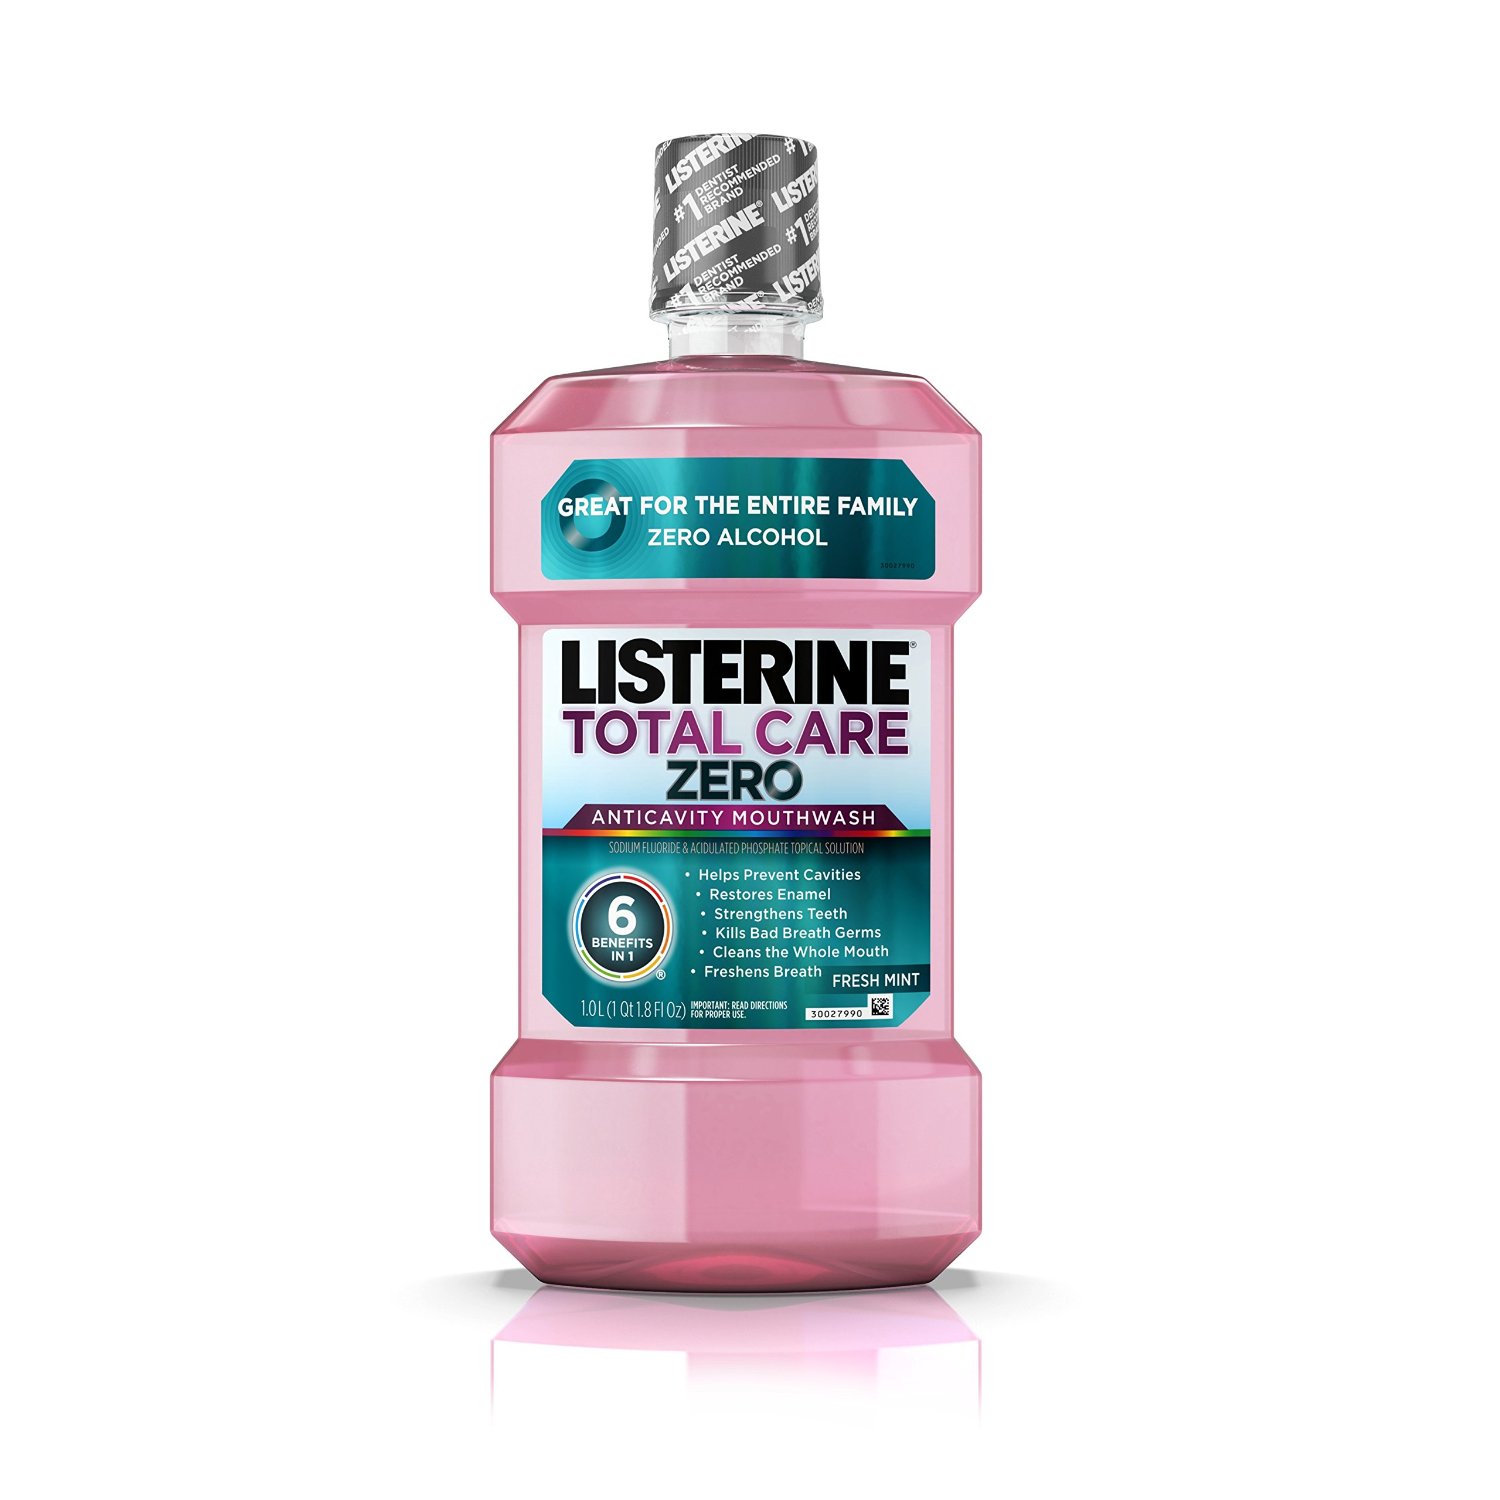 Listerine mouthwash Zero anticavity mouthwash